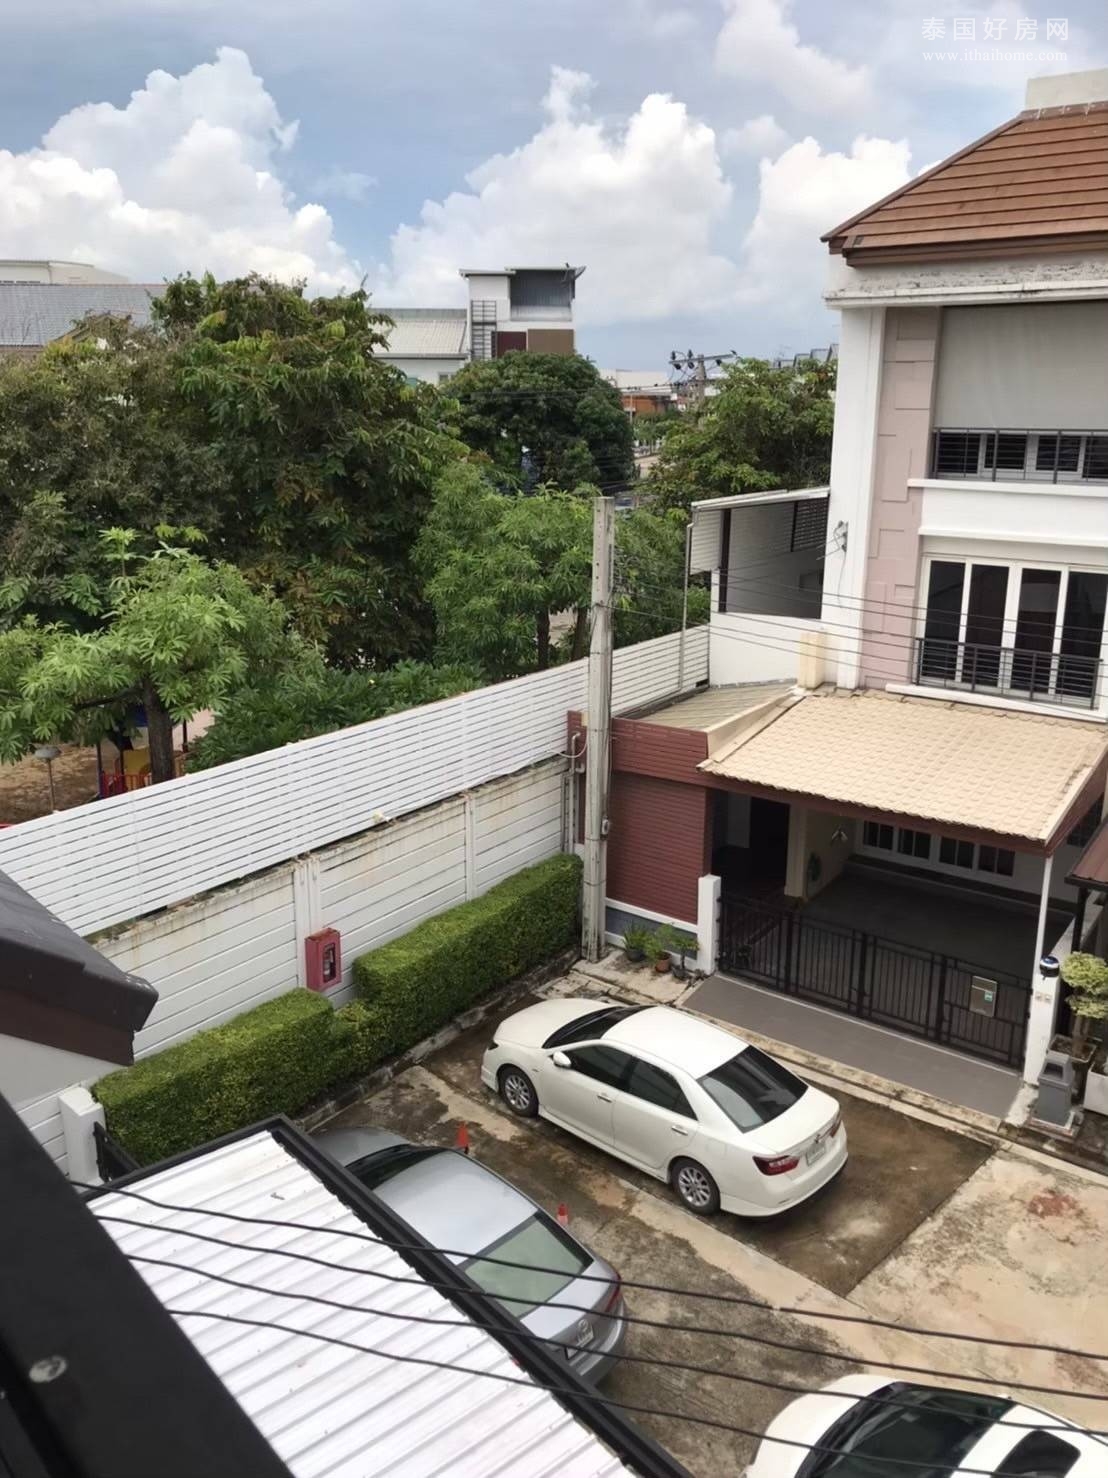 Baan Klang Muang S-Sense Rama 9 - Ladprao 别墅出售 6卧198平米 1490万泰铢